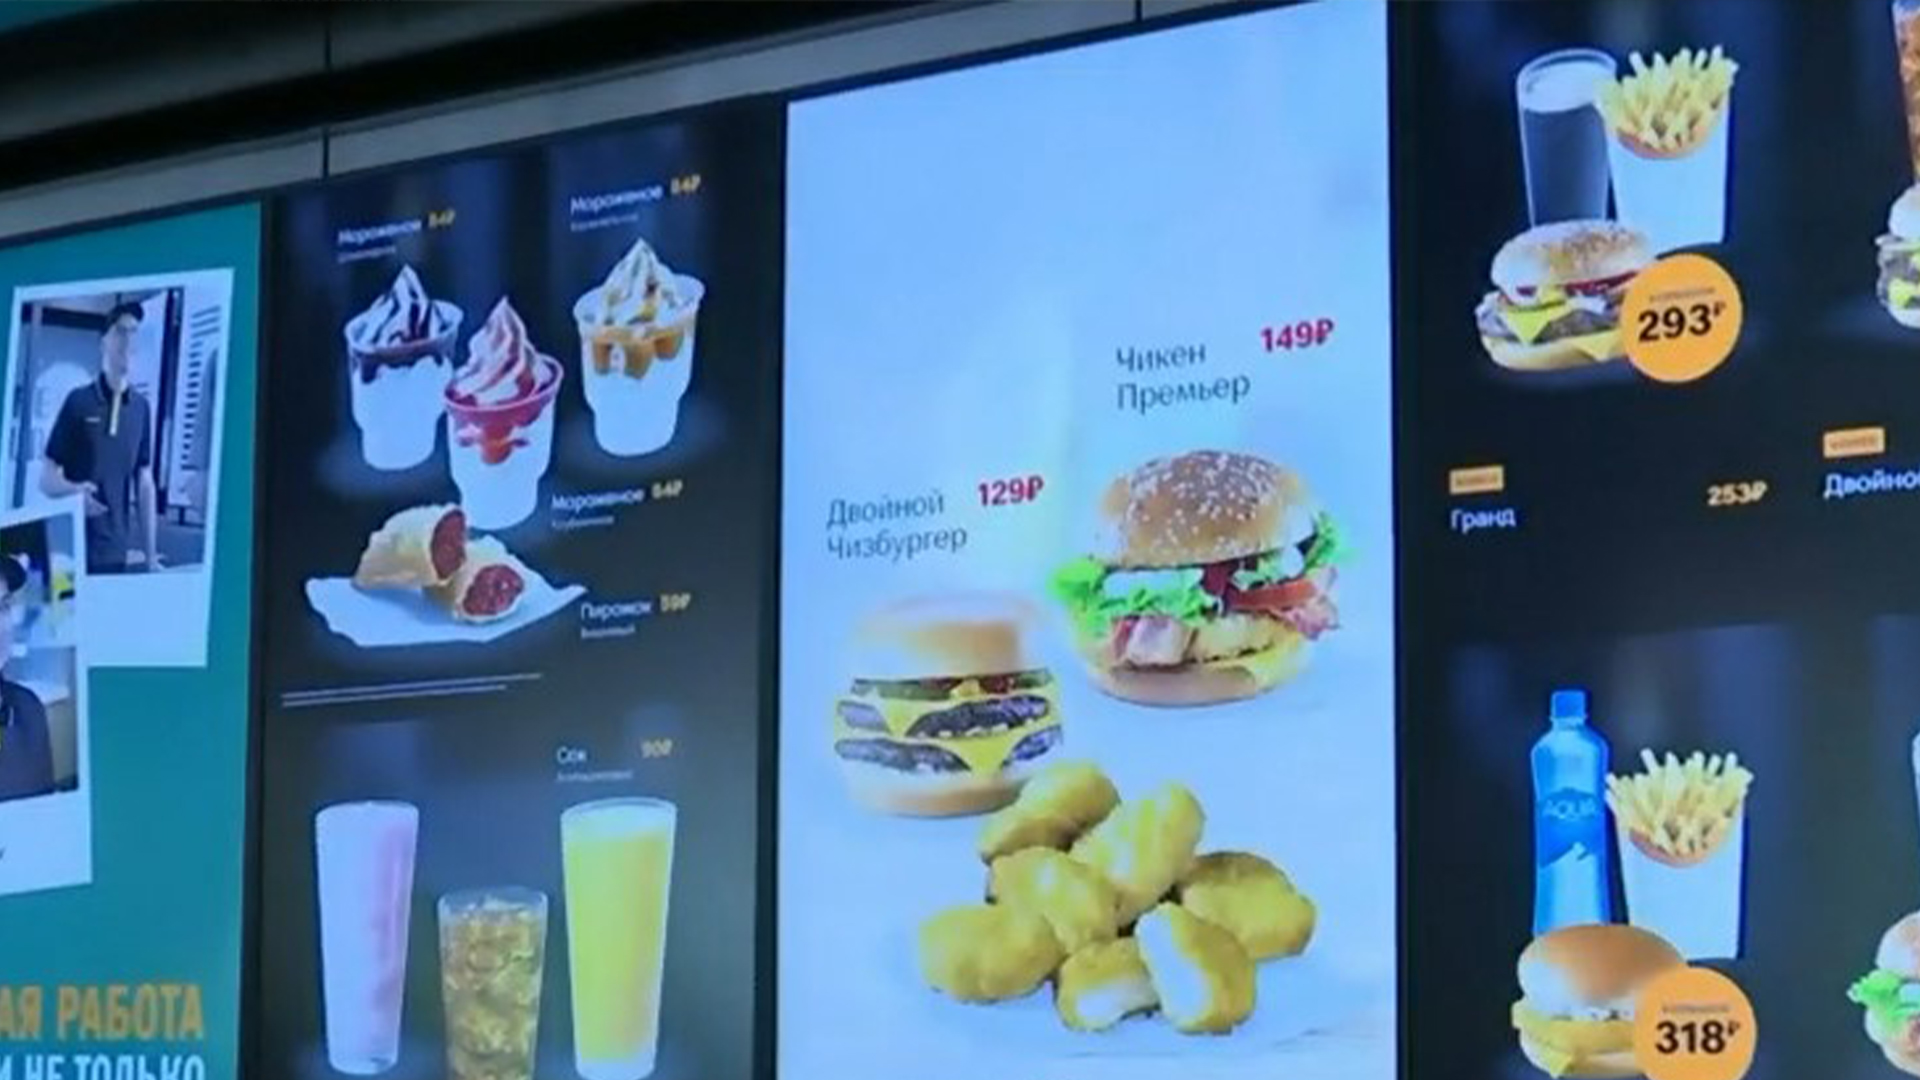 La chaîne Vkusno-i Tochka, venue remplacer les anciens McDonald’s de Russie, est déjà confrontée à un premier problème majeur depuis son ouverture en juin dernier.